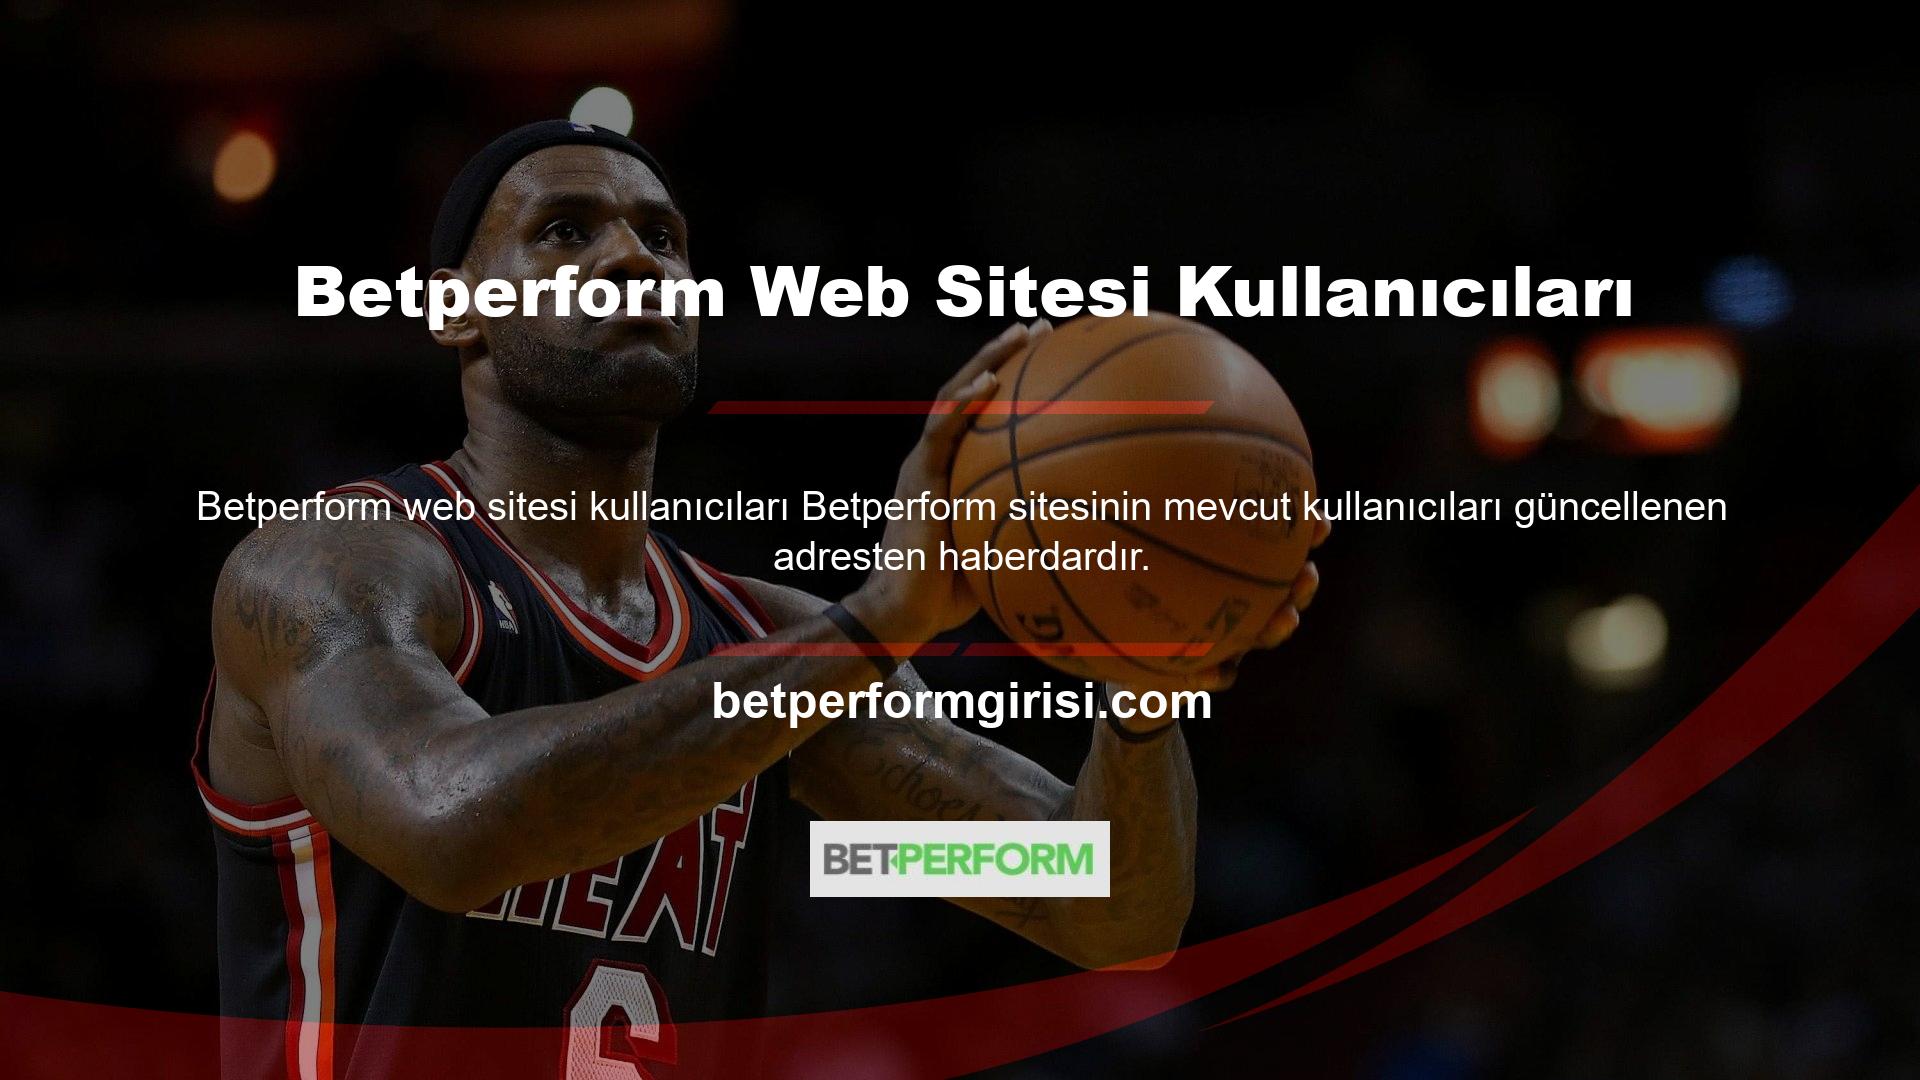 Betperform web sitesi kullanıcıları  bir kullanıcı bu durumu nasıl çözer? Bu konuda arama motoruna Betperform sitesi yazılır ve görüntülenen ilk sayfa güncel Betperform sitesidir